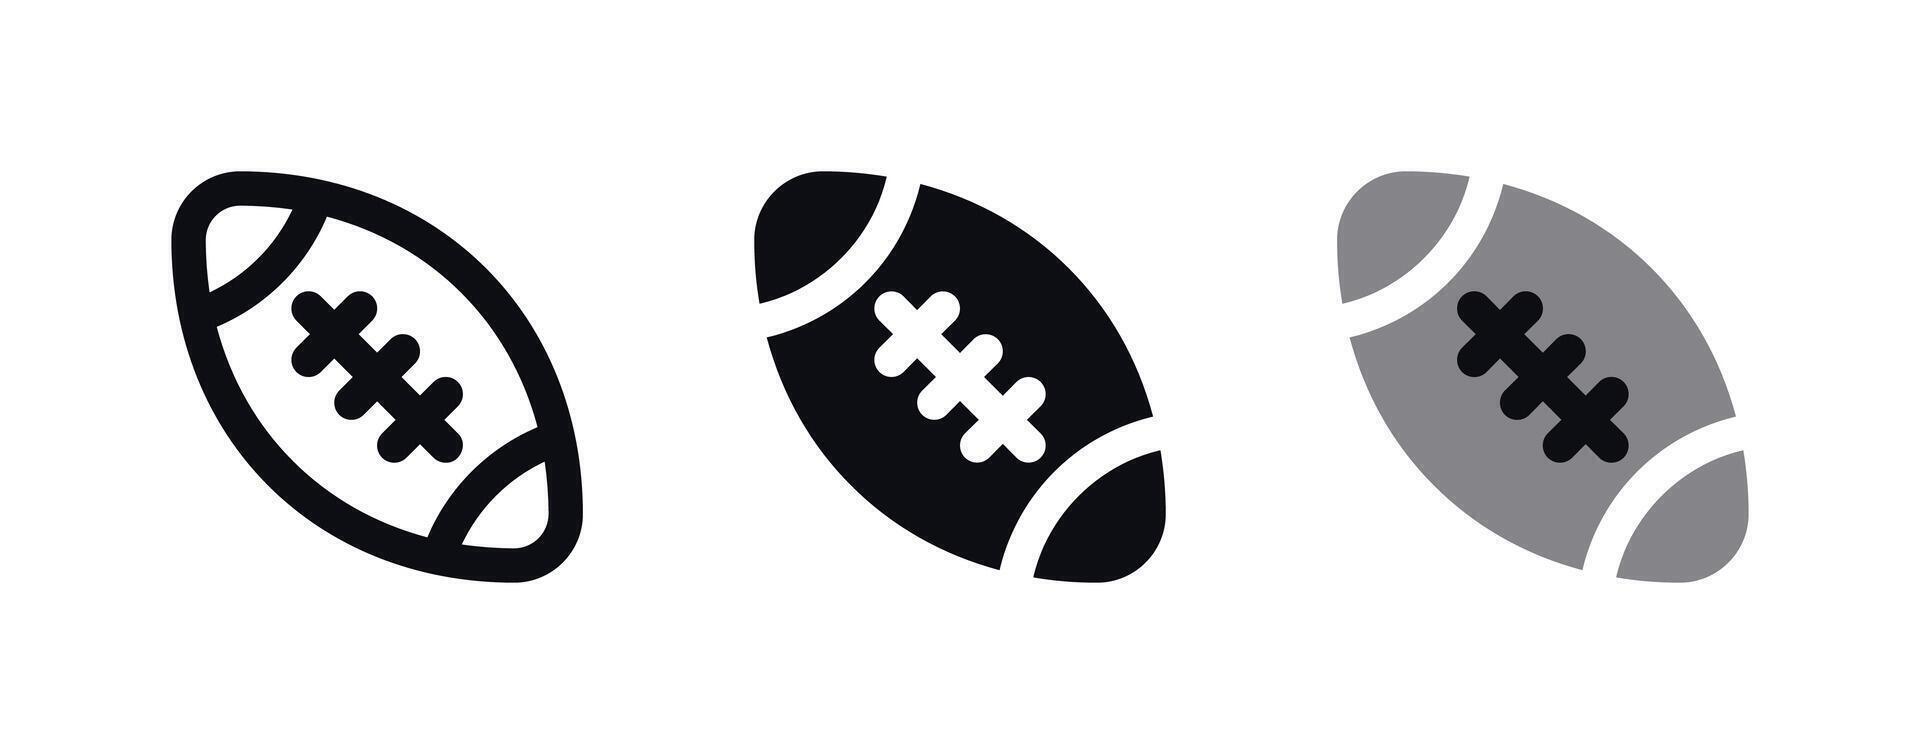 rugby pelota icono - Deportes equipo símbolo vector